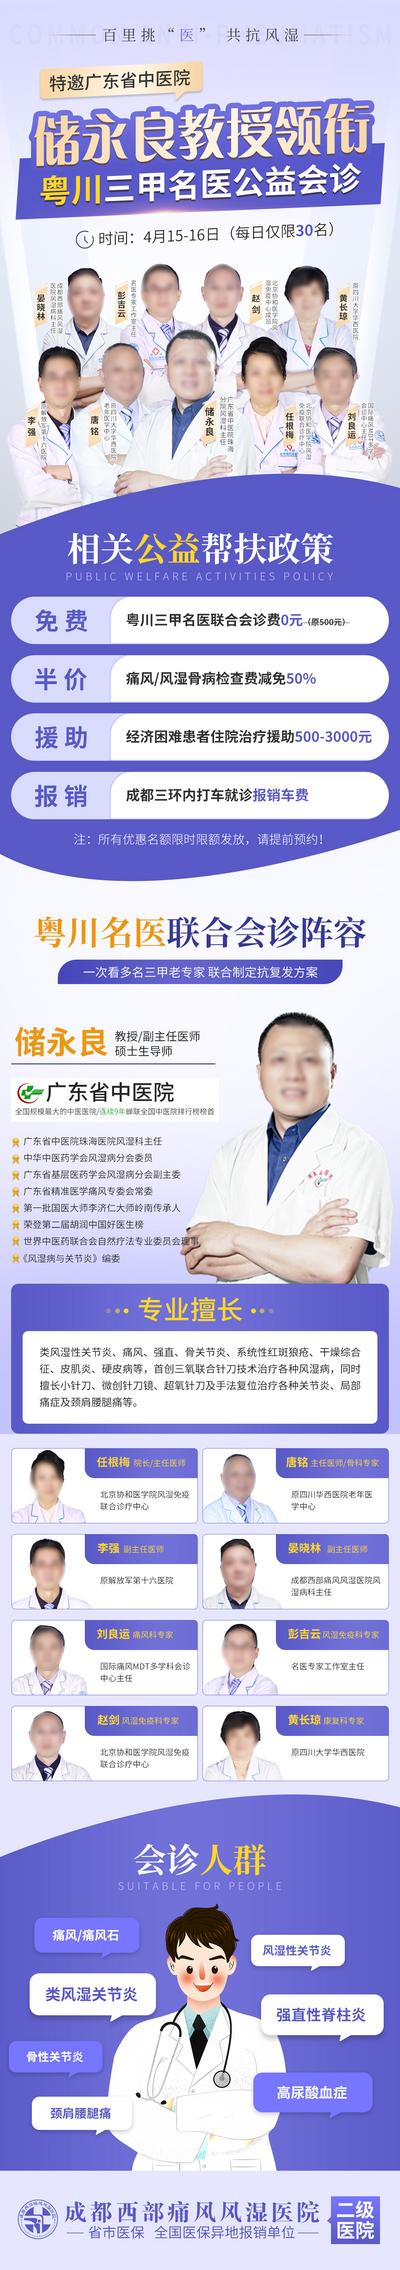 南门网 广告 海报 长图 专家 三甲 医院 会诊 推文 医师 专业 活动 专题